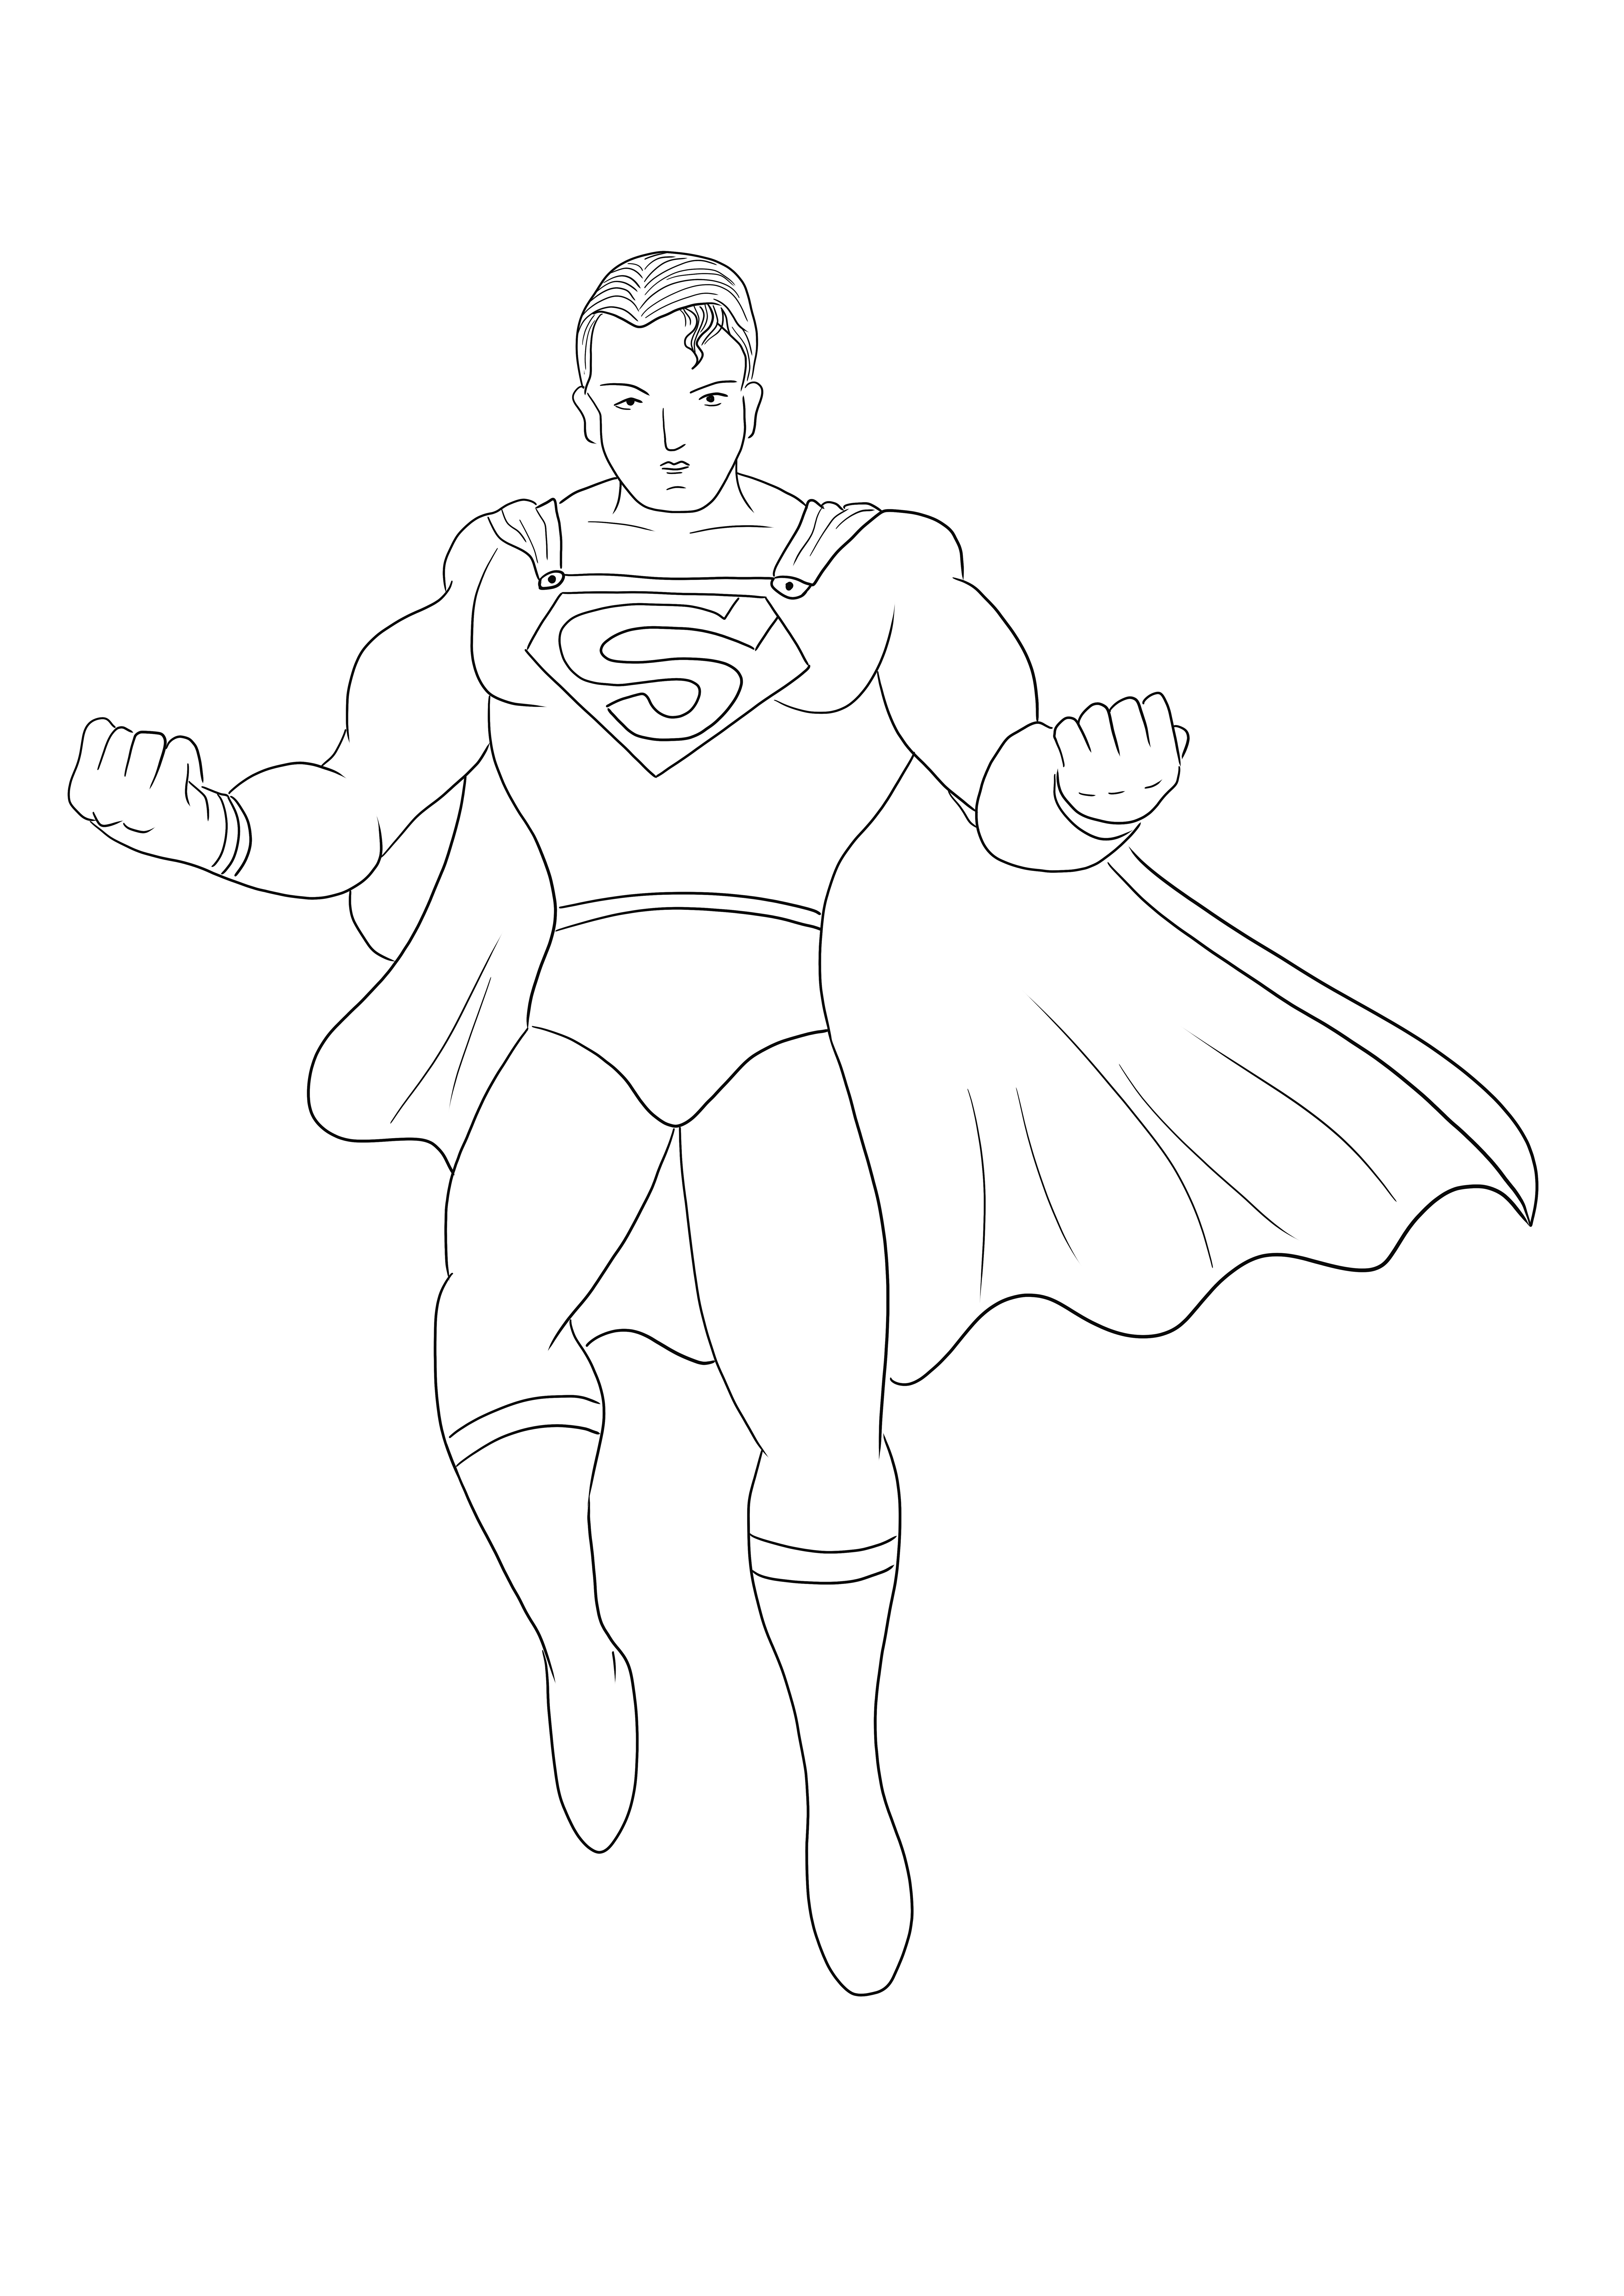 A folha de colorir simples e fácil do herói Superman grátis para imprimir